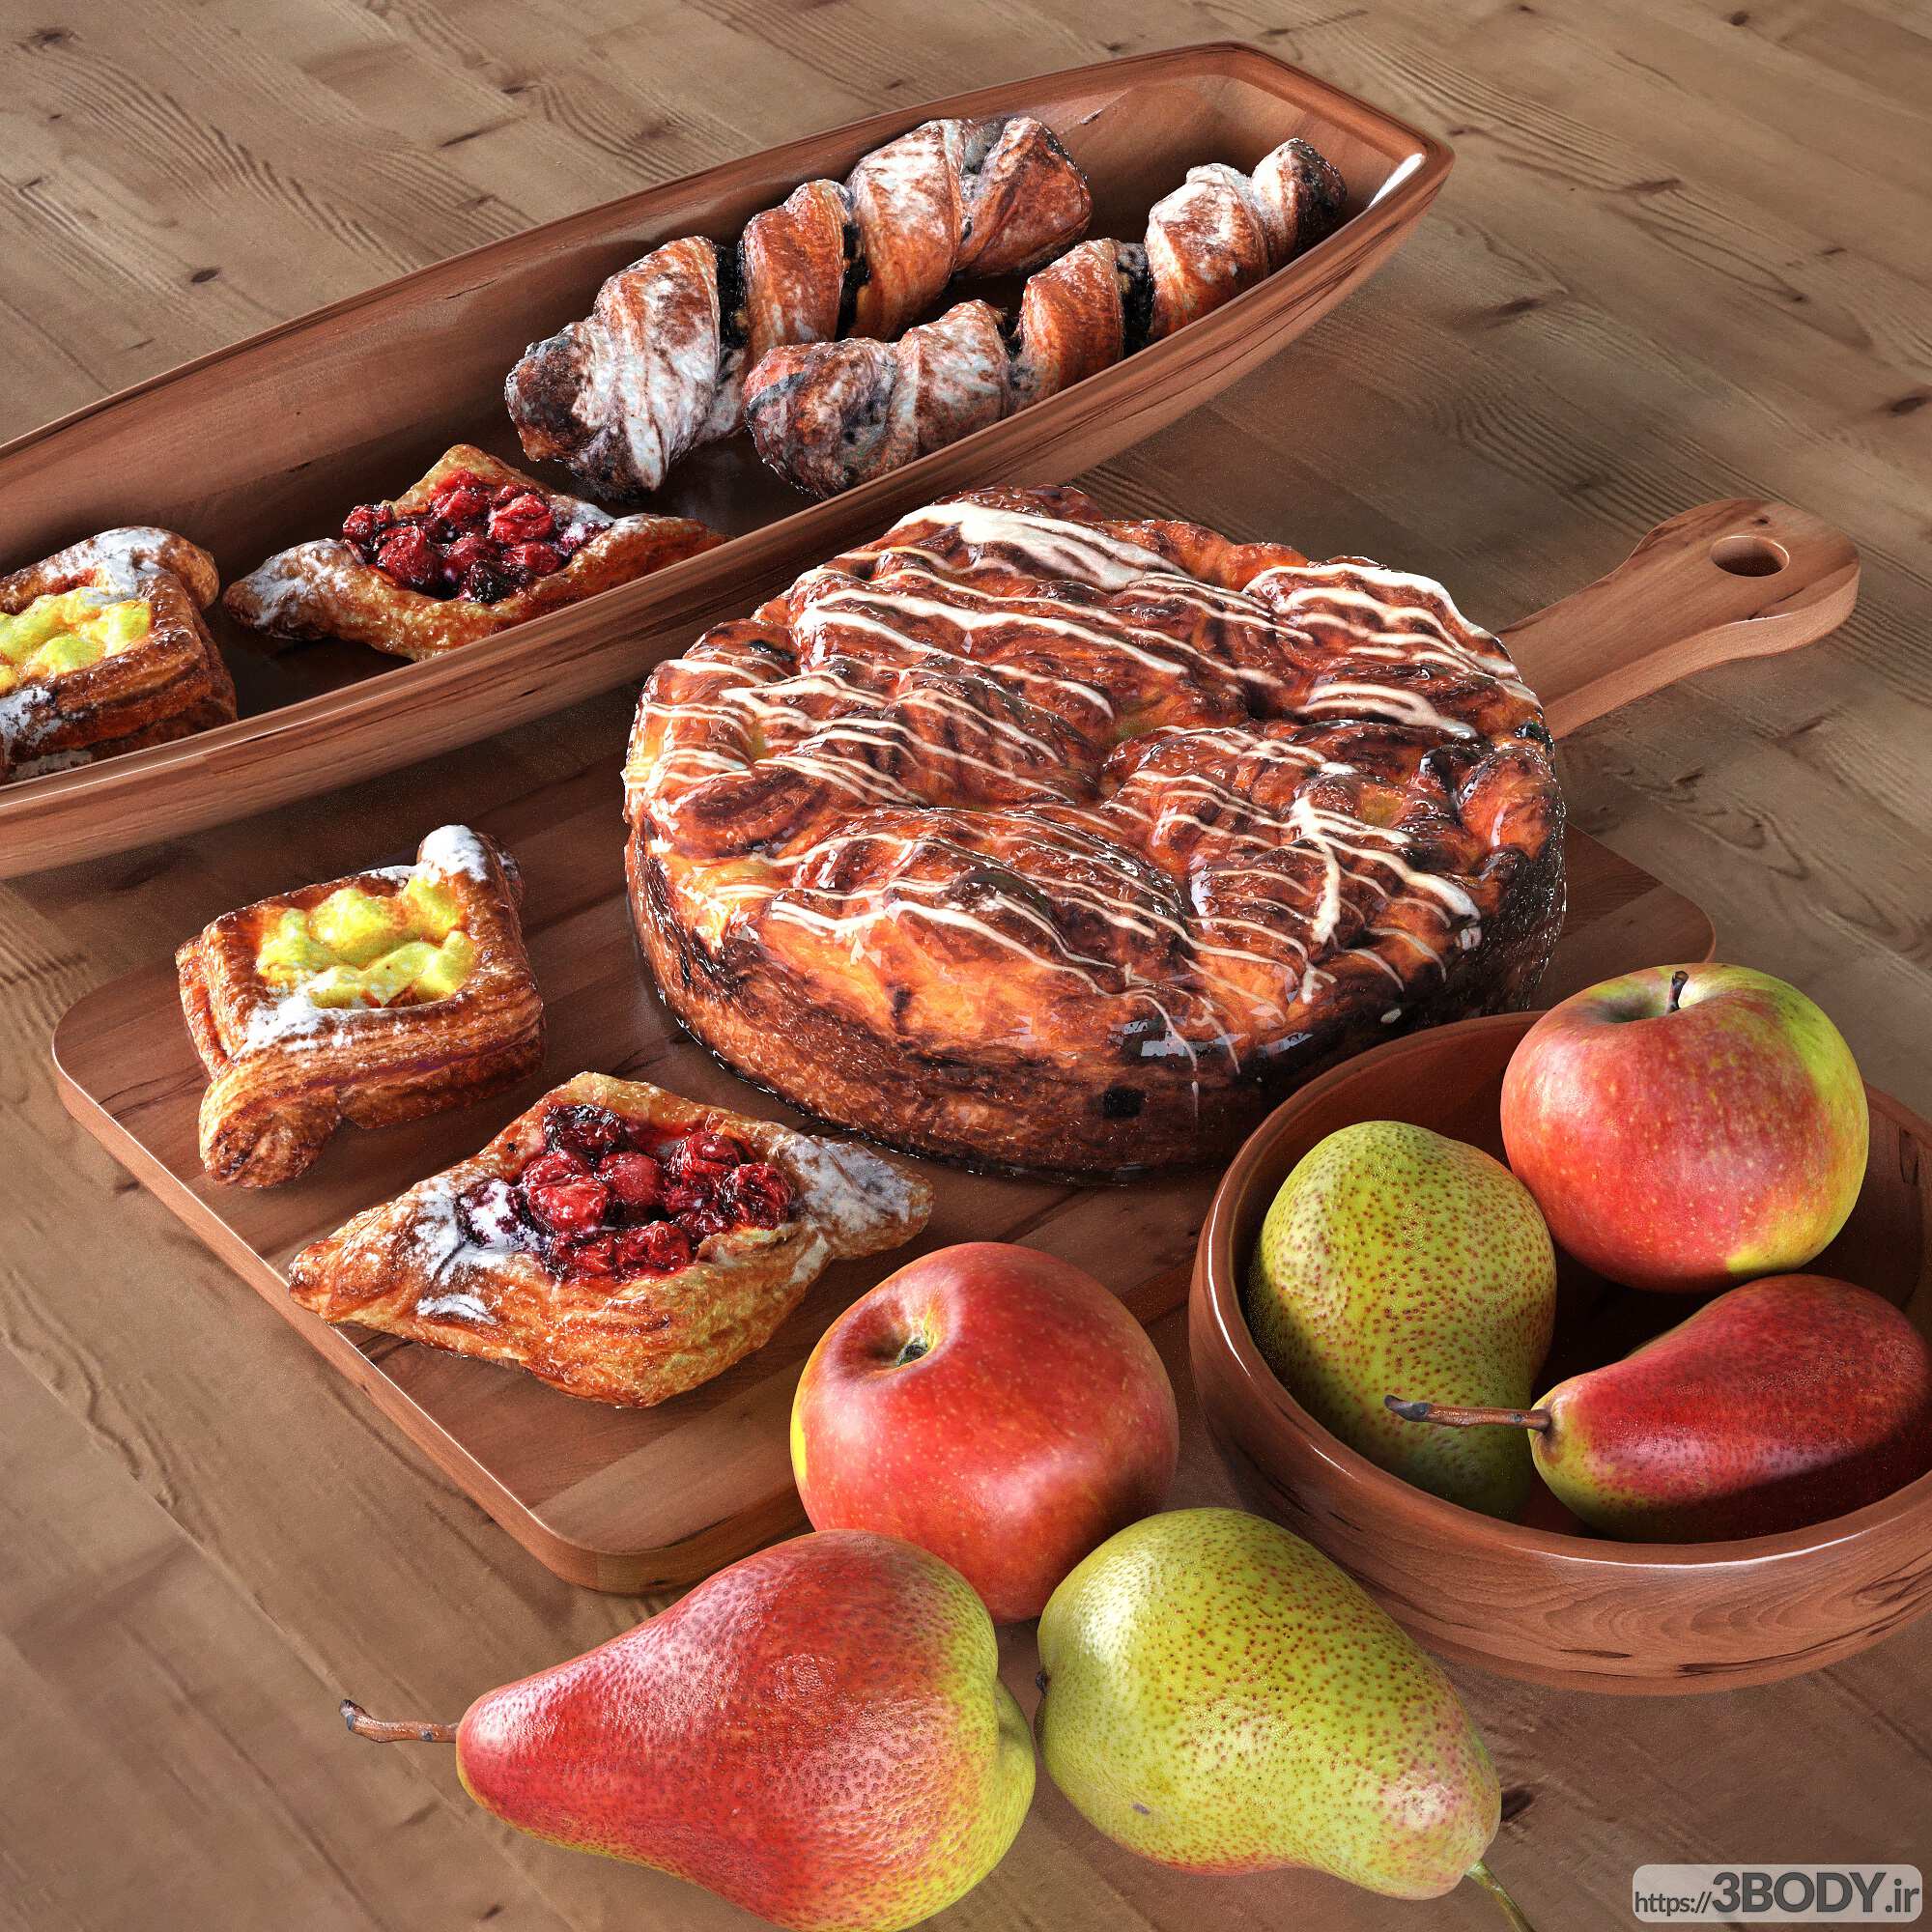 مدل سه بعدی غذا و میوه عکس 1